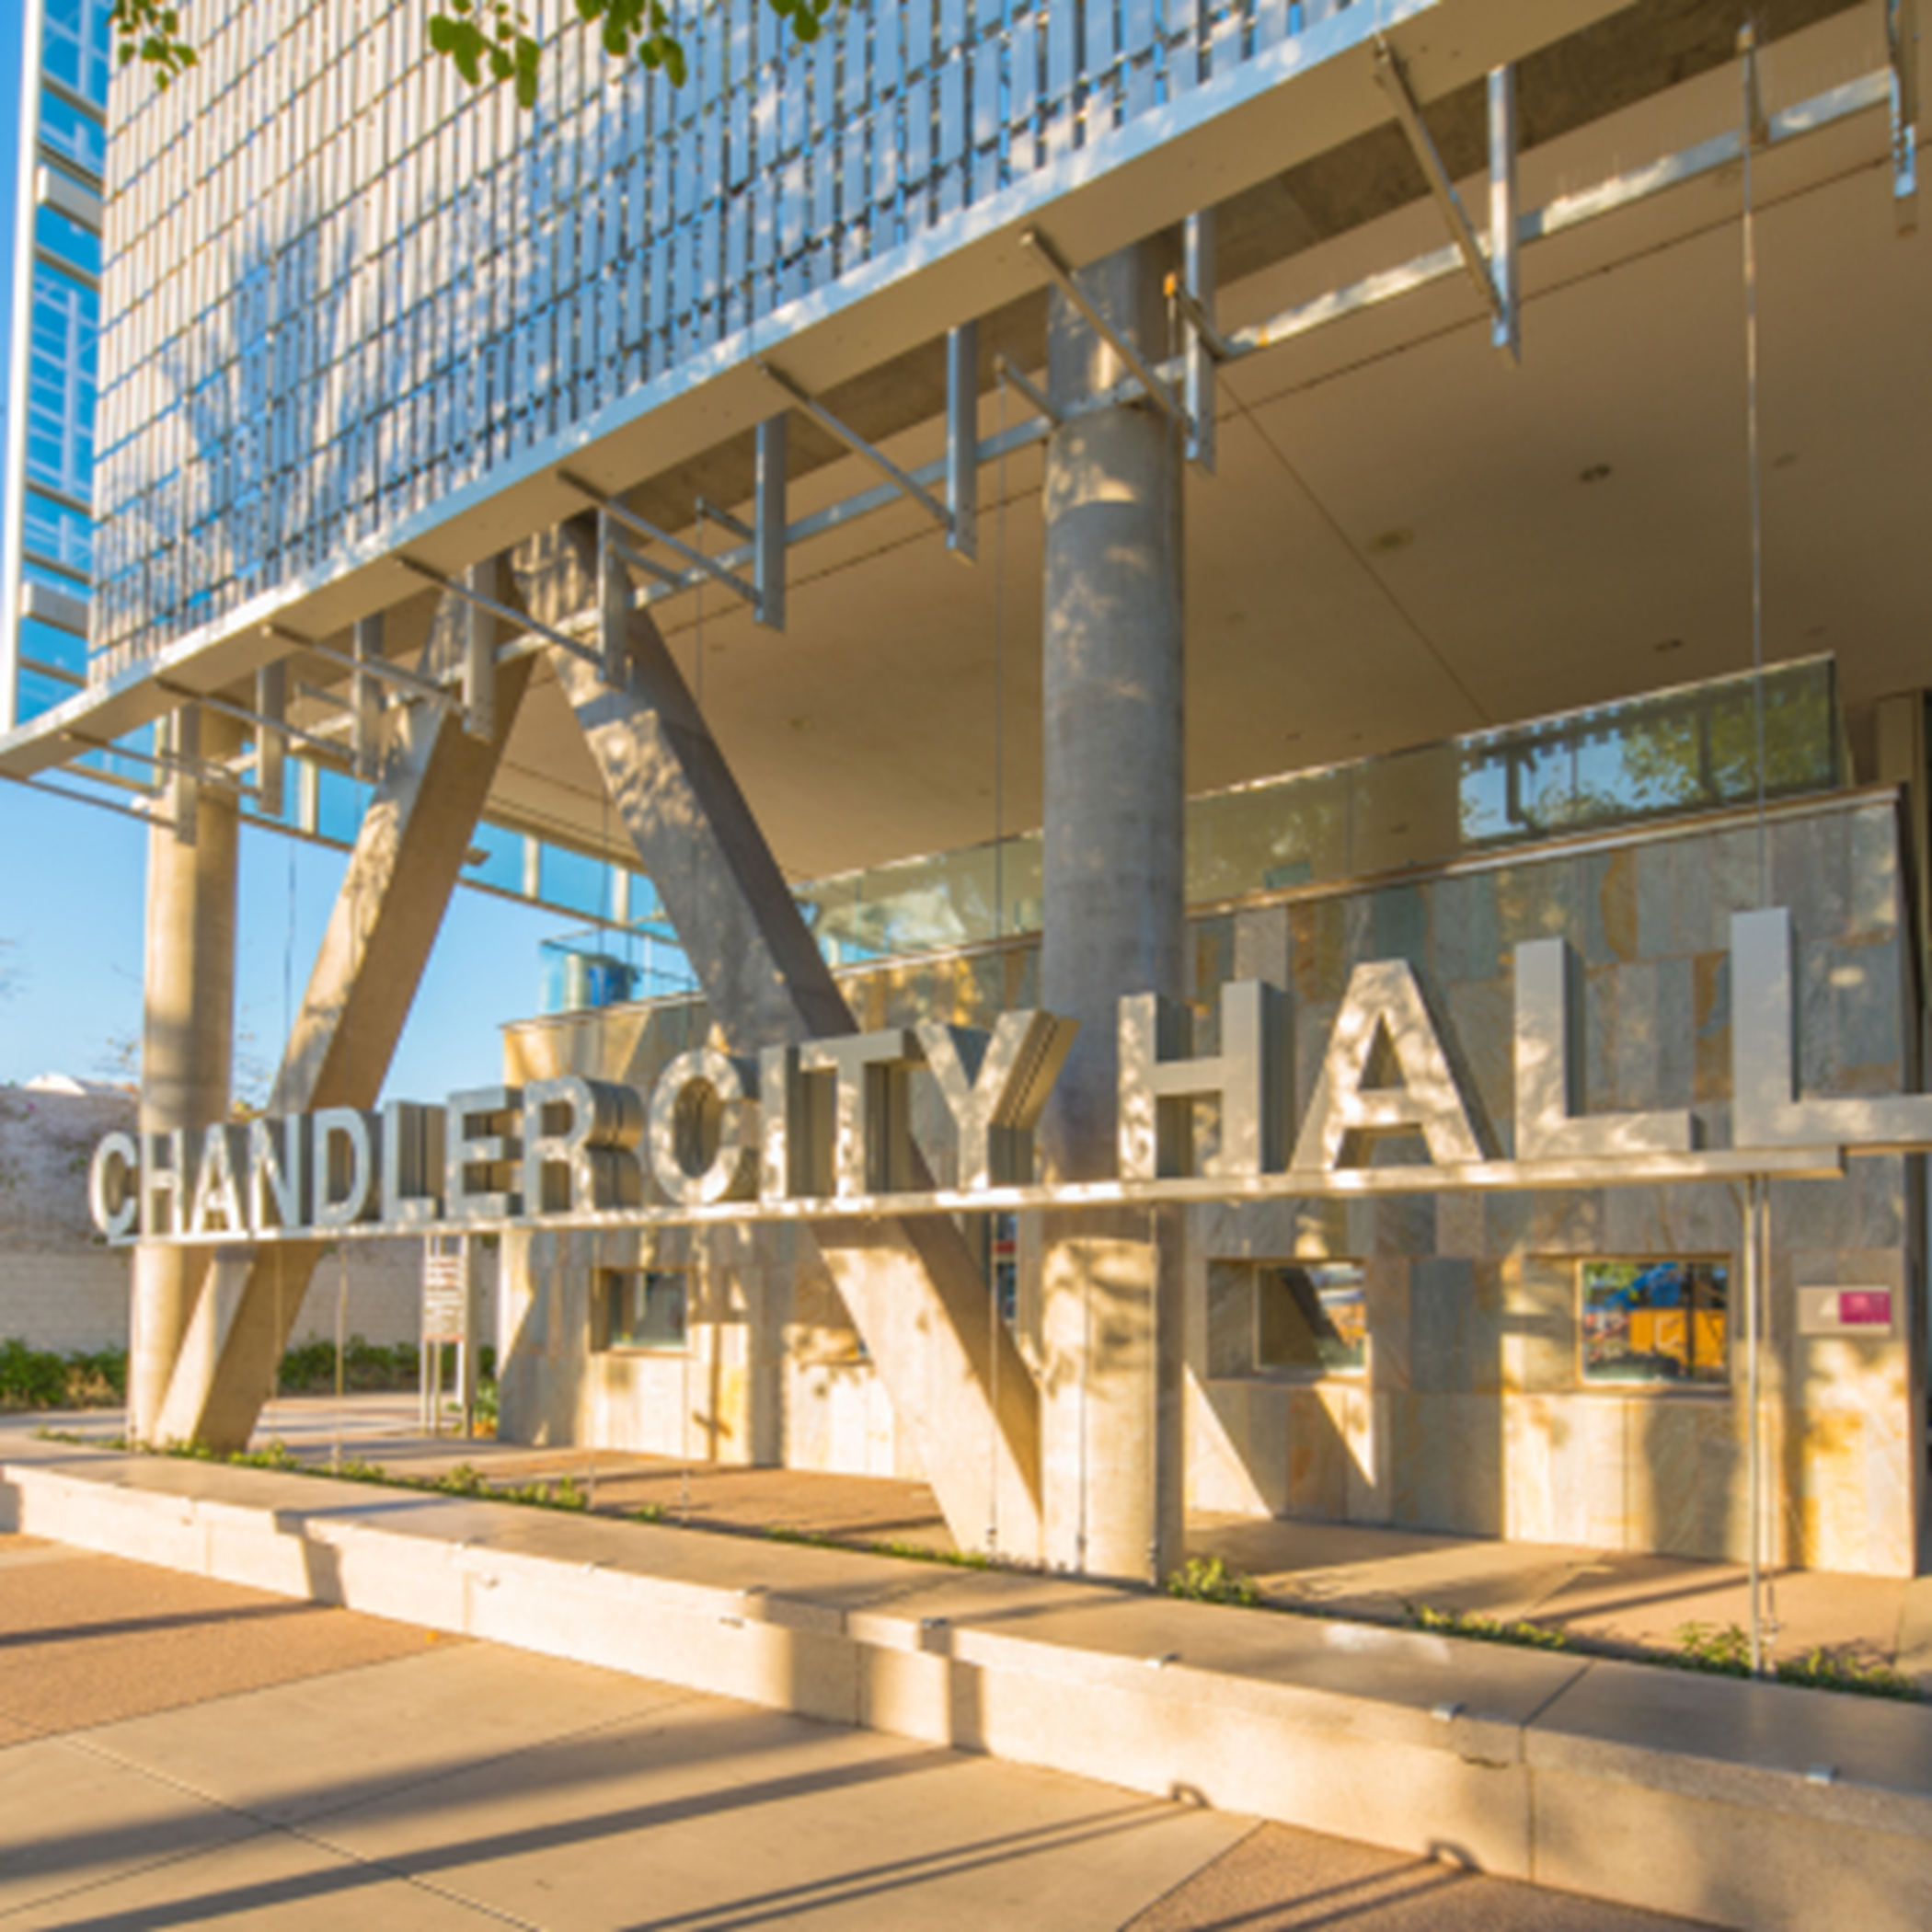 Chandler City hall image